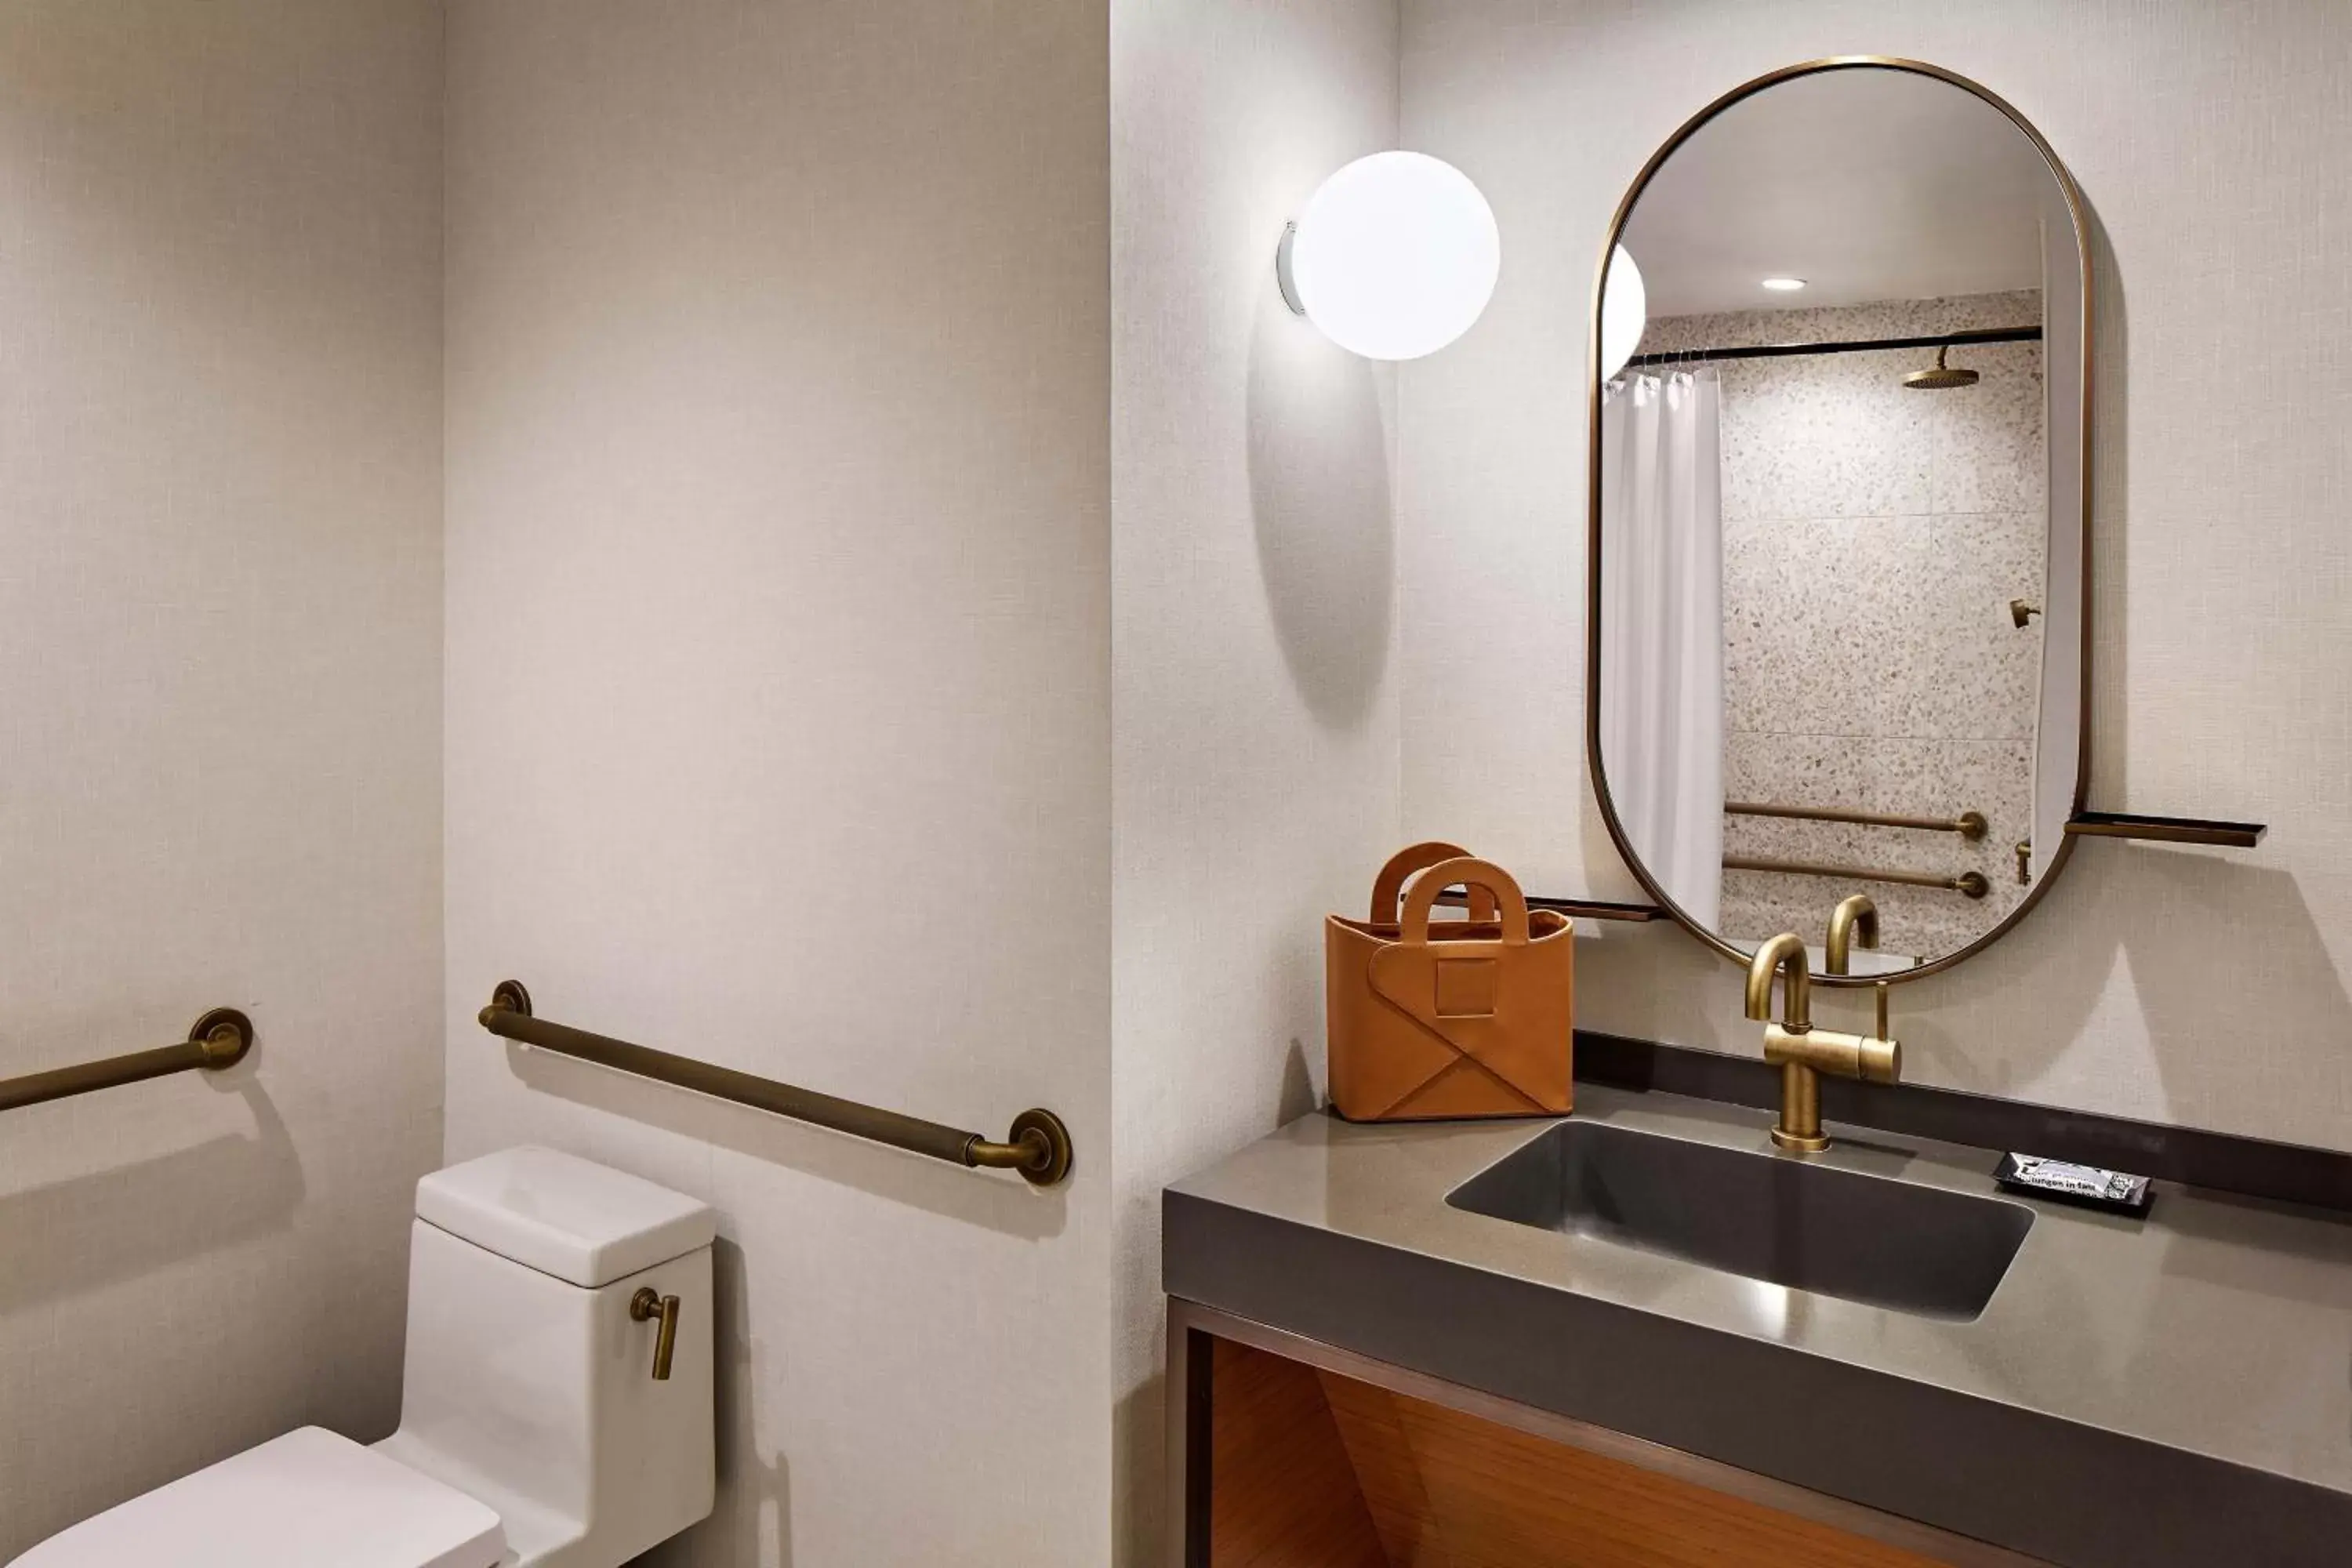 Bathroom in Hotel Citrine, Palo Alto, a Tribute Portfolio Hotel